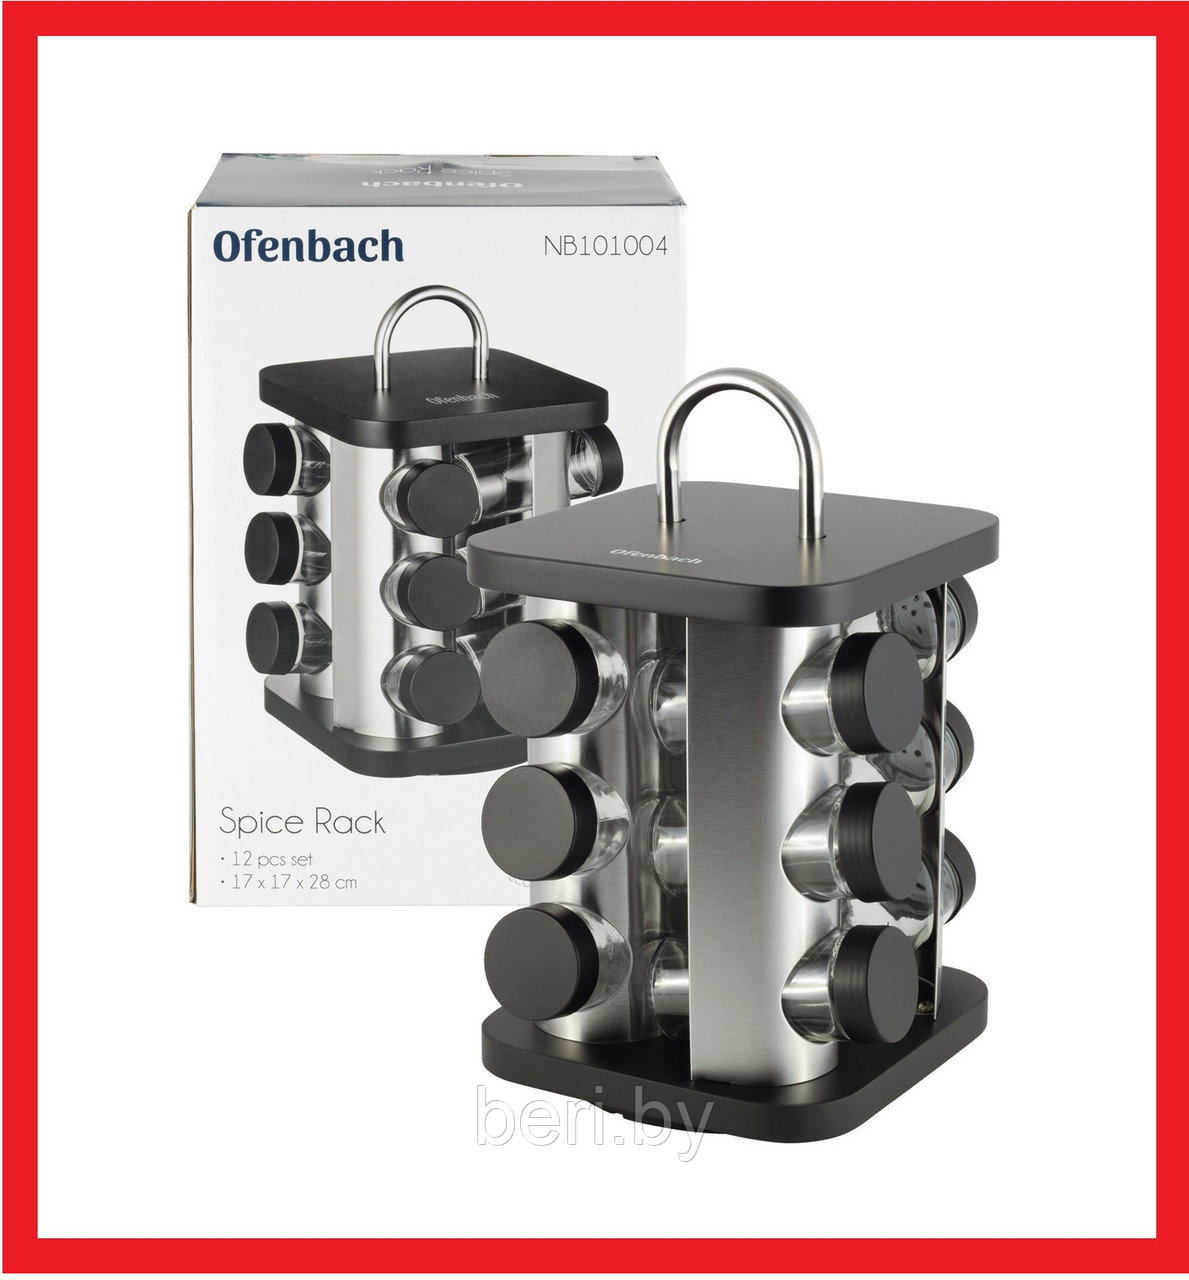 KM-101004 Набор для специй Ofenbach, 12 шт., на квадратной подставке, набор емкостей для специй